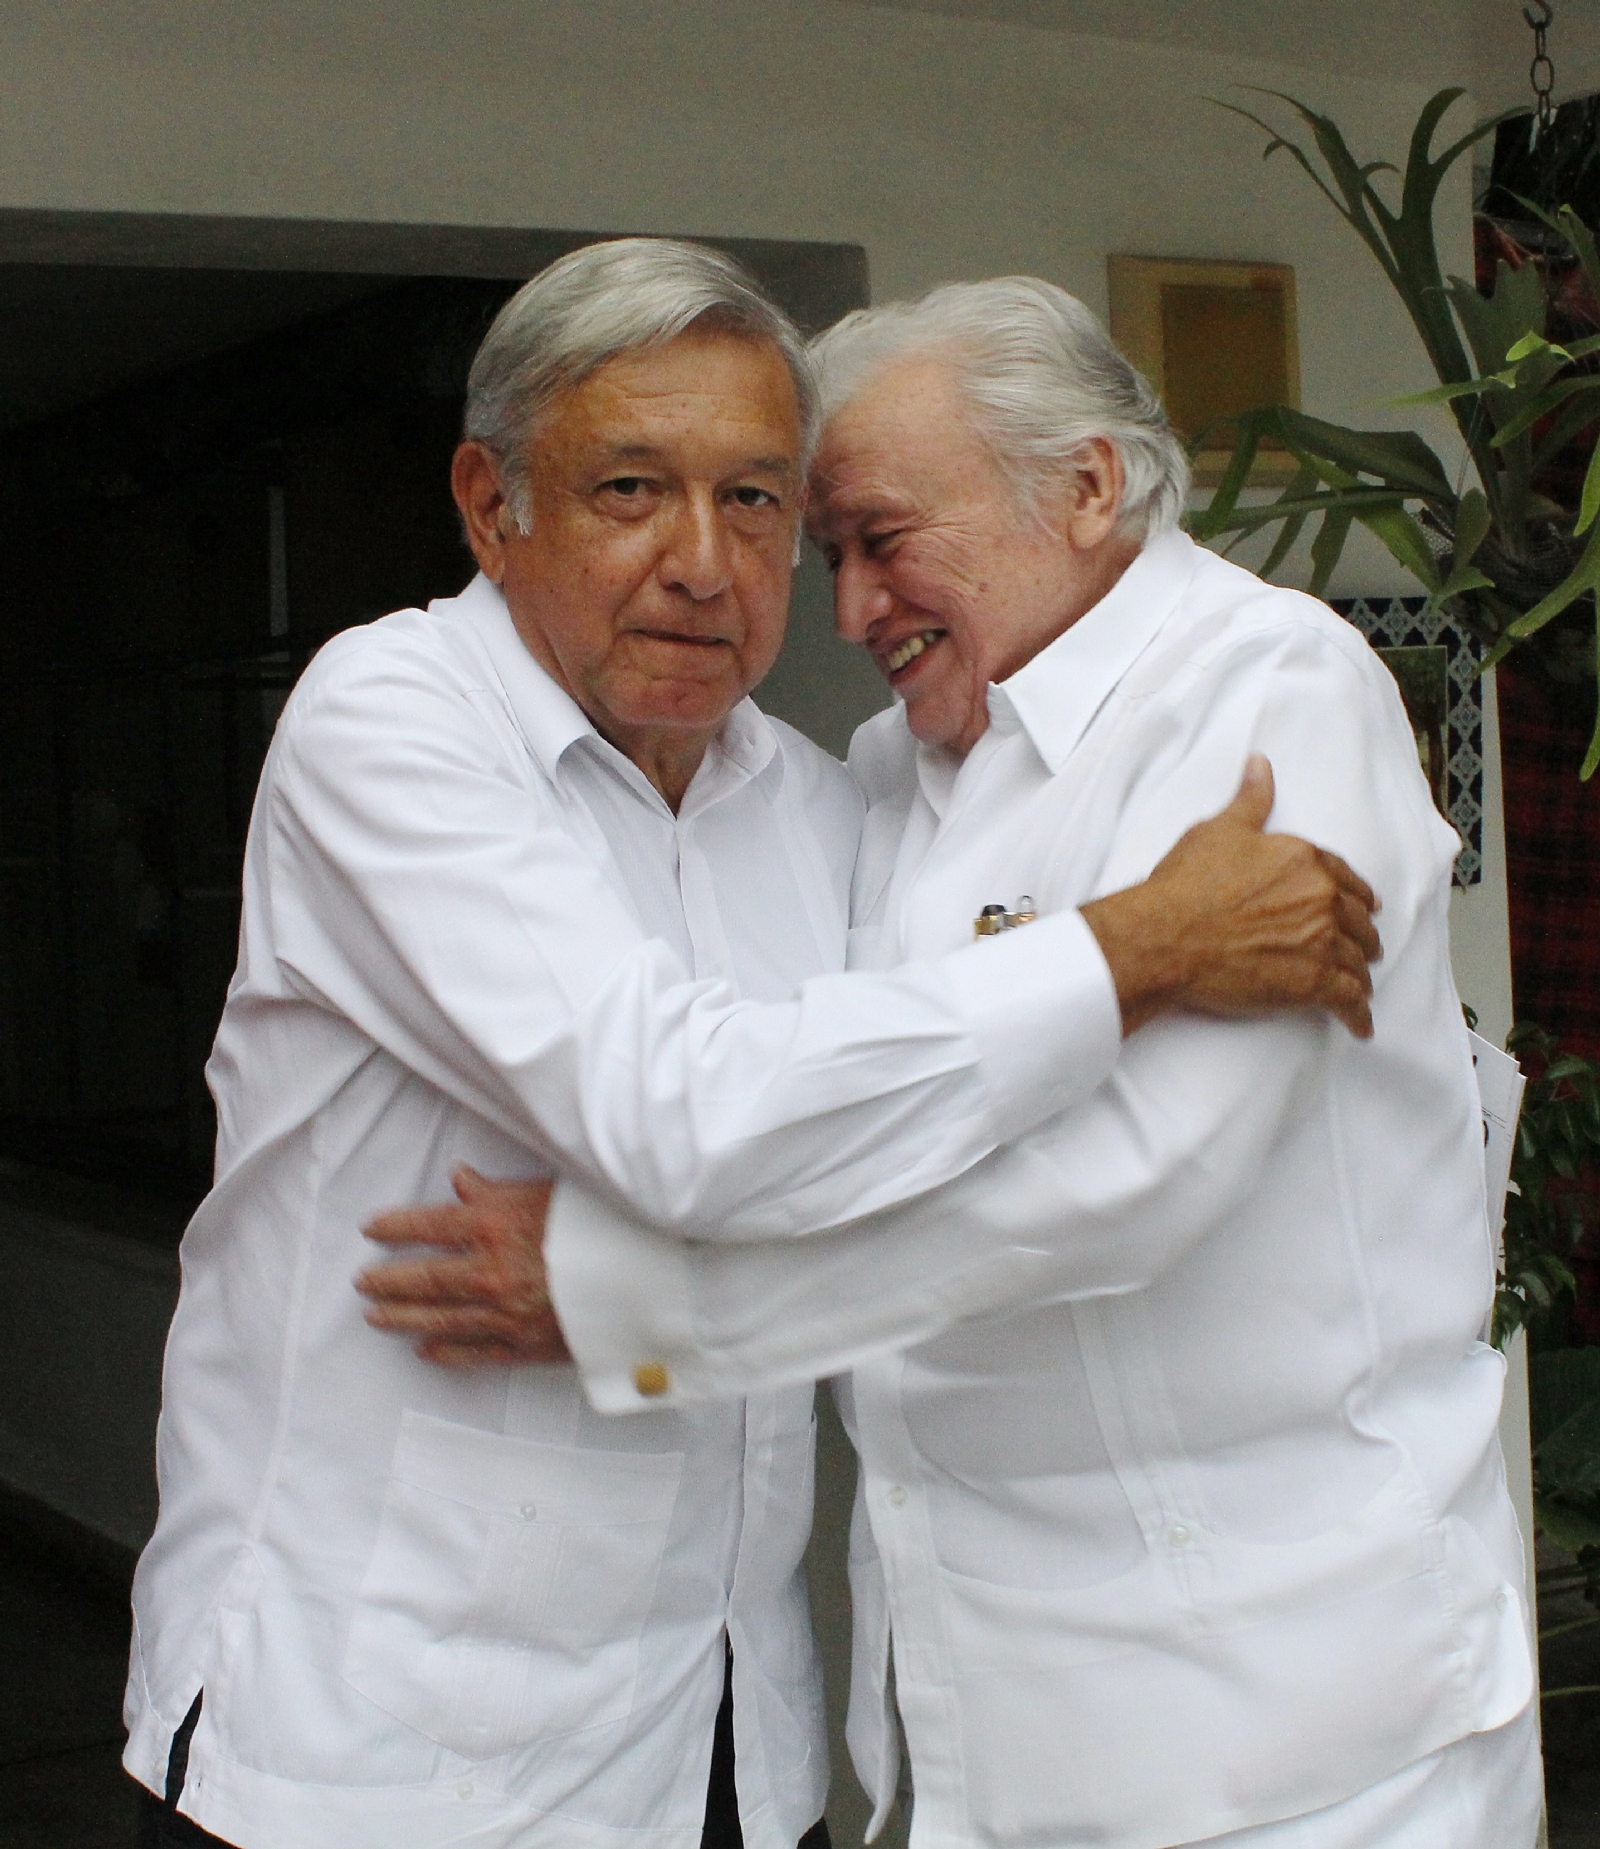 Como presidente electo, Andrés Manuel López Obrador se encontró con Don Mario Renato Menéndez el 13 de octubre de 2018